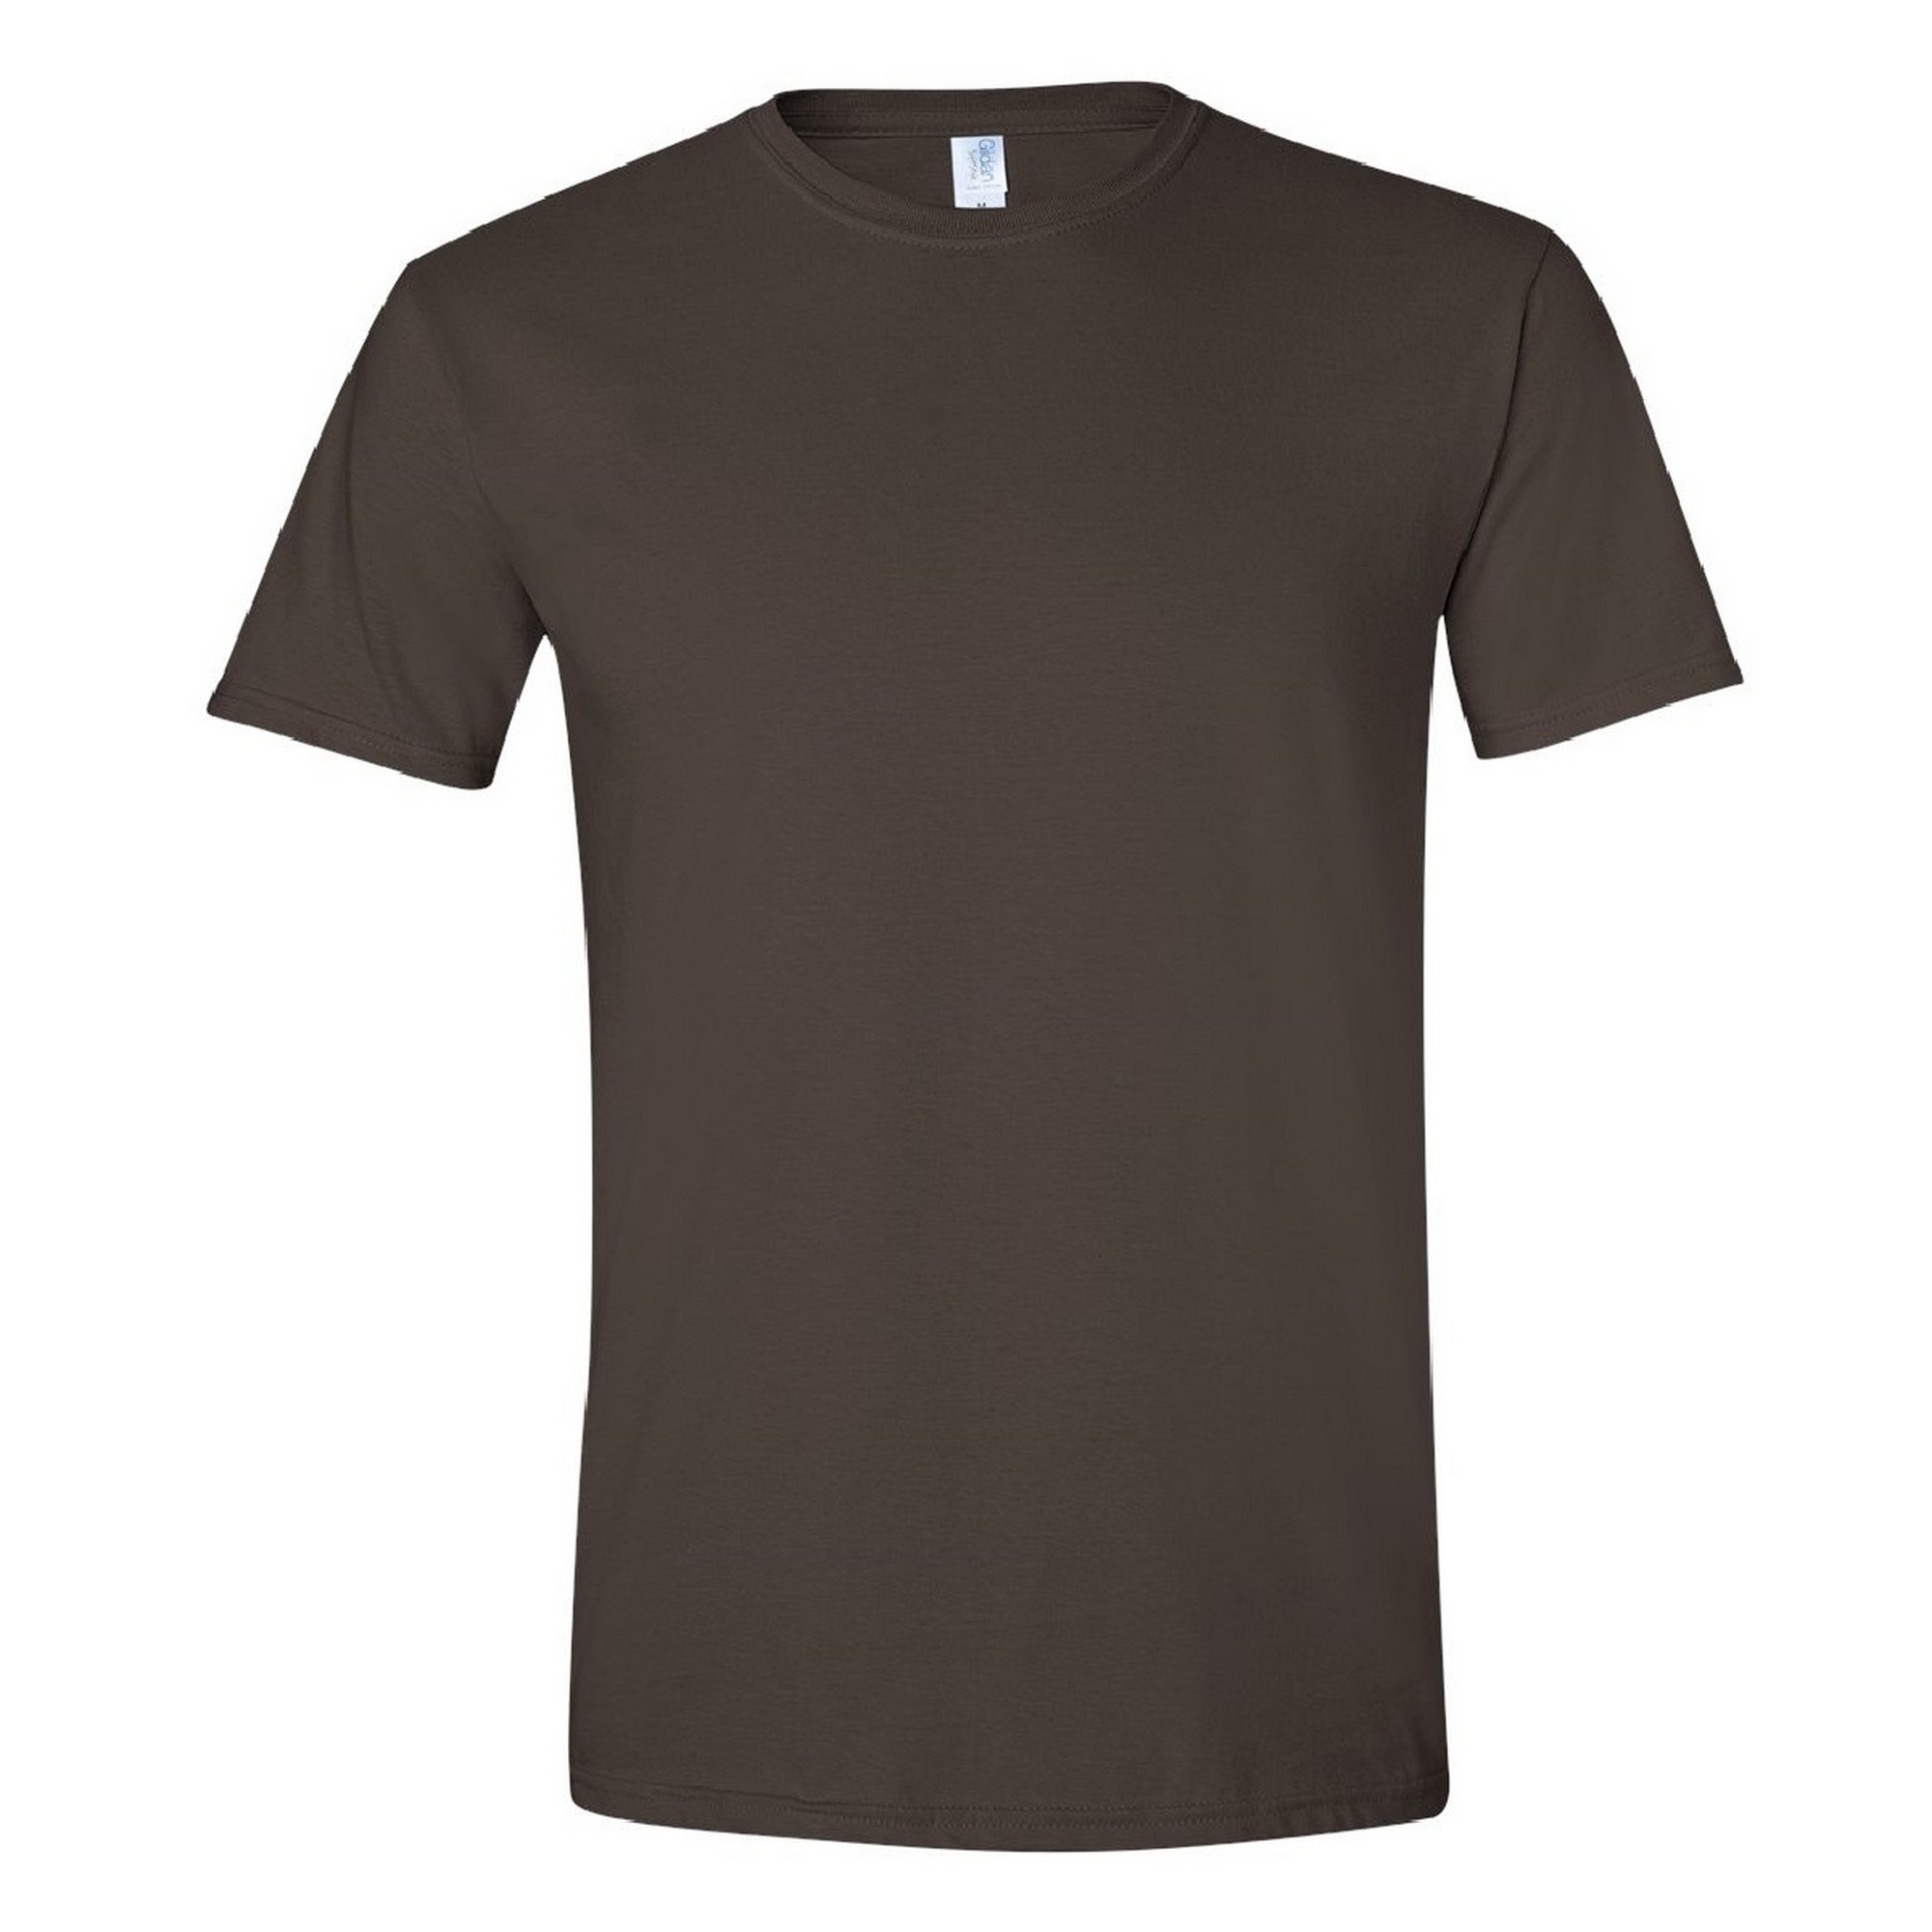 Camiseta De Manga Corta Suave Básica 100% Algodón Gordo Gildan - marron - 